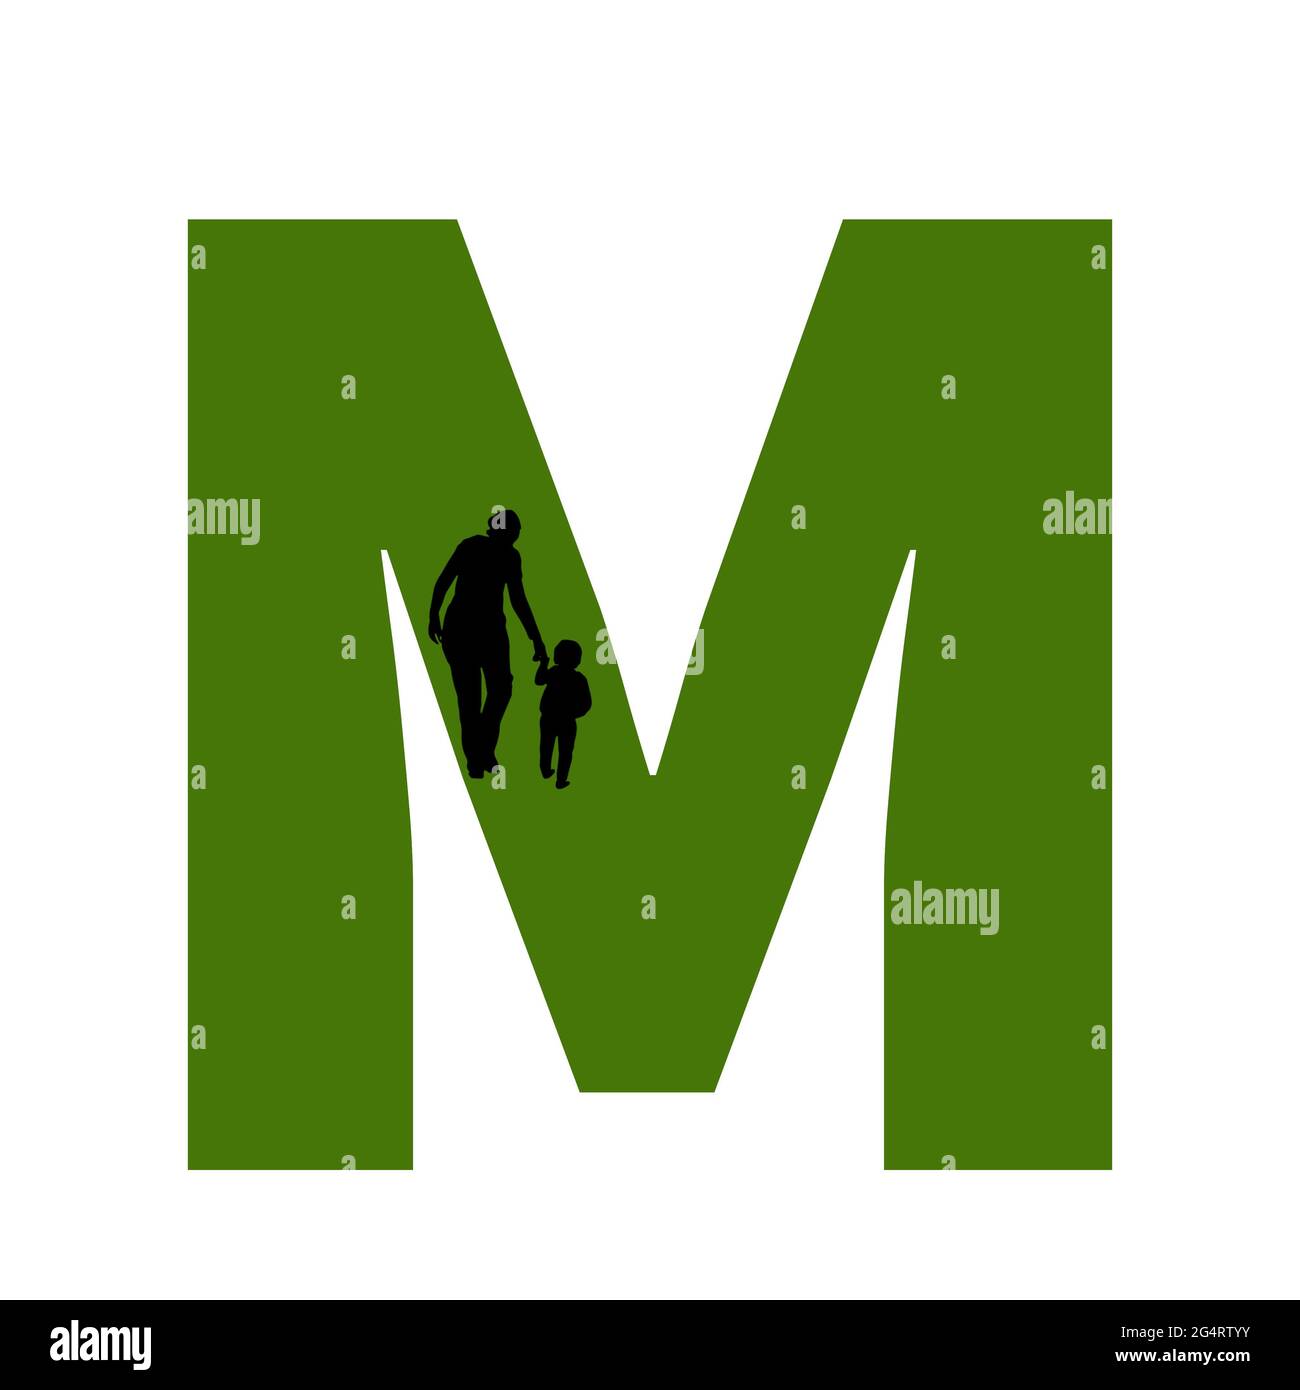 Lettre M de l'alphabet avec silhouette d'une mère et d'un enfant marchant, en vert et noir Banque D'Images